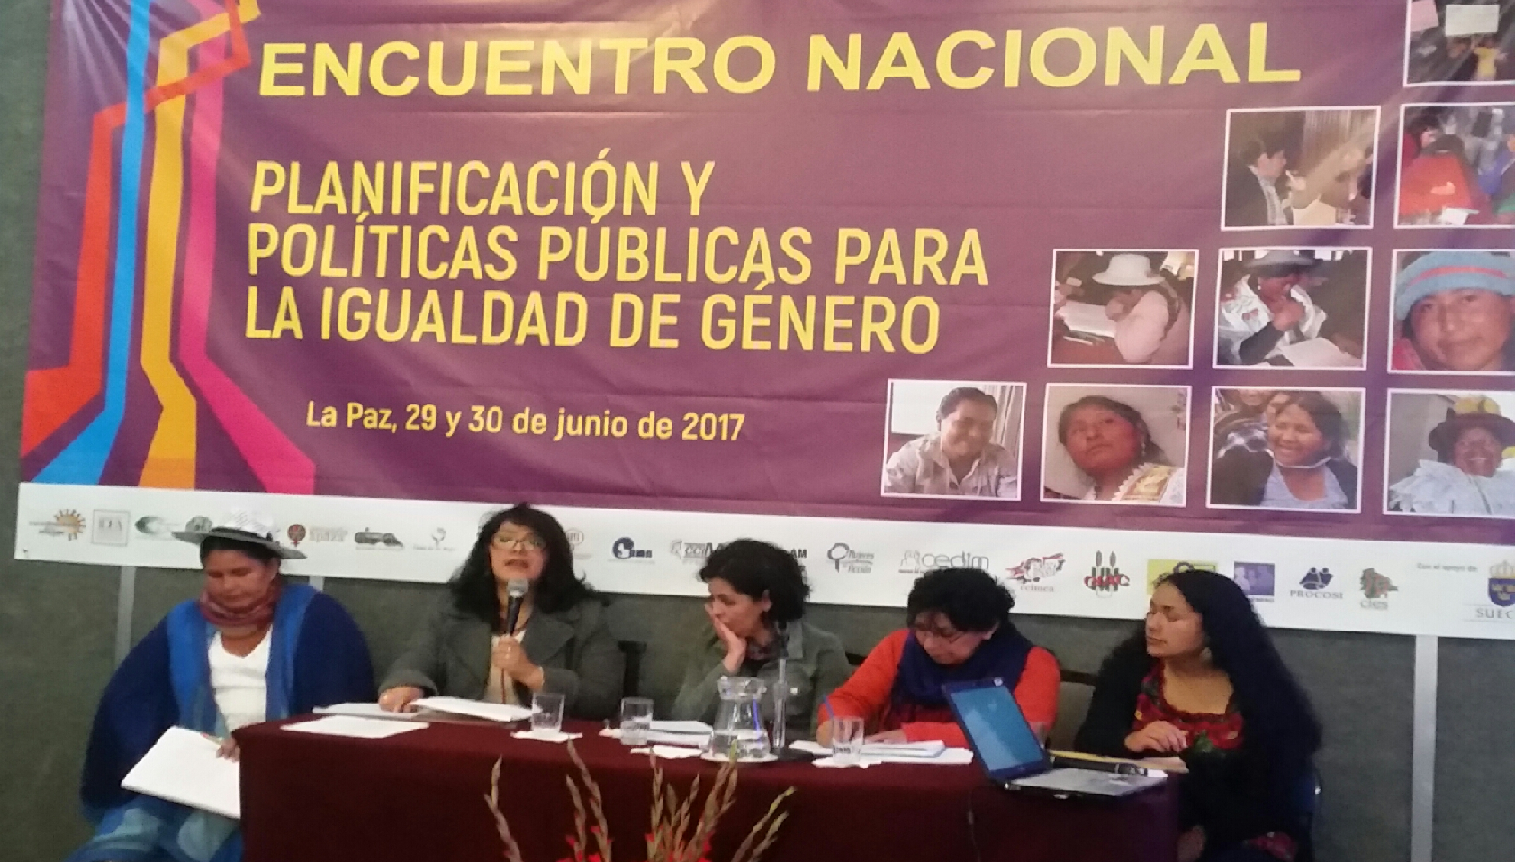 Photo caption: IDEA Internacional participó en un Encuentro Nacional sobre Planificación y Políticas Públicas para la Igualdad de Género en La Paz, Bolivia, el 29 y 30 de junio de 2017. Crédito foto: IDEA Internacional